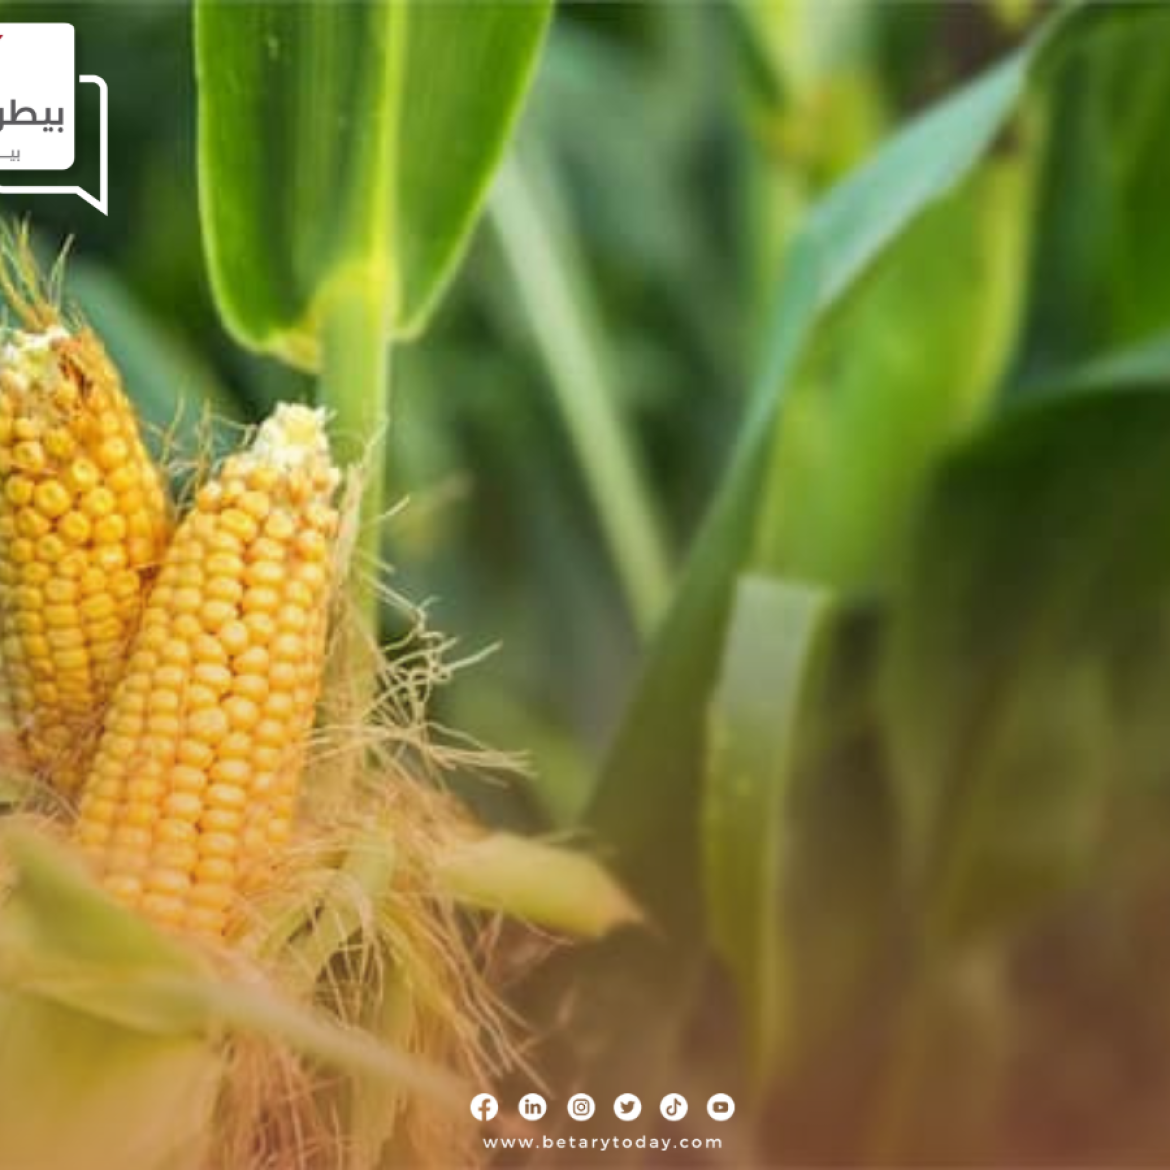 الوزارة تصدر 3 توصيات هامة لمزارعي الذرة الصفراء في شهر يوليو